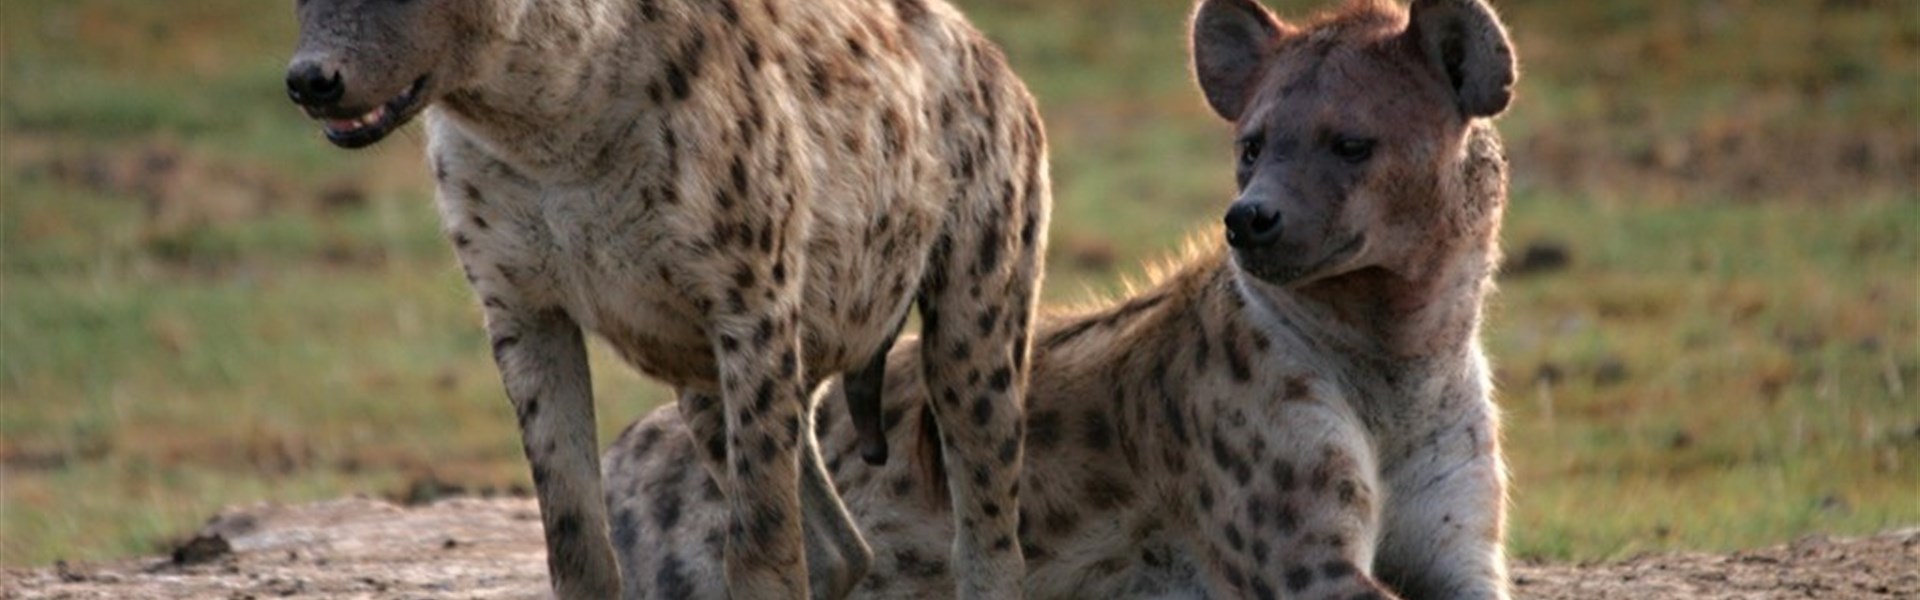 Tři národní parky - tři odlišné tváře safari  (Amboseli, Tsavo West a Tsavo East) - český průvodce - Safari v Keni s Marco Polo_Amboseli